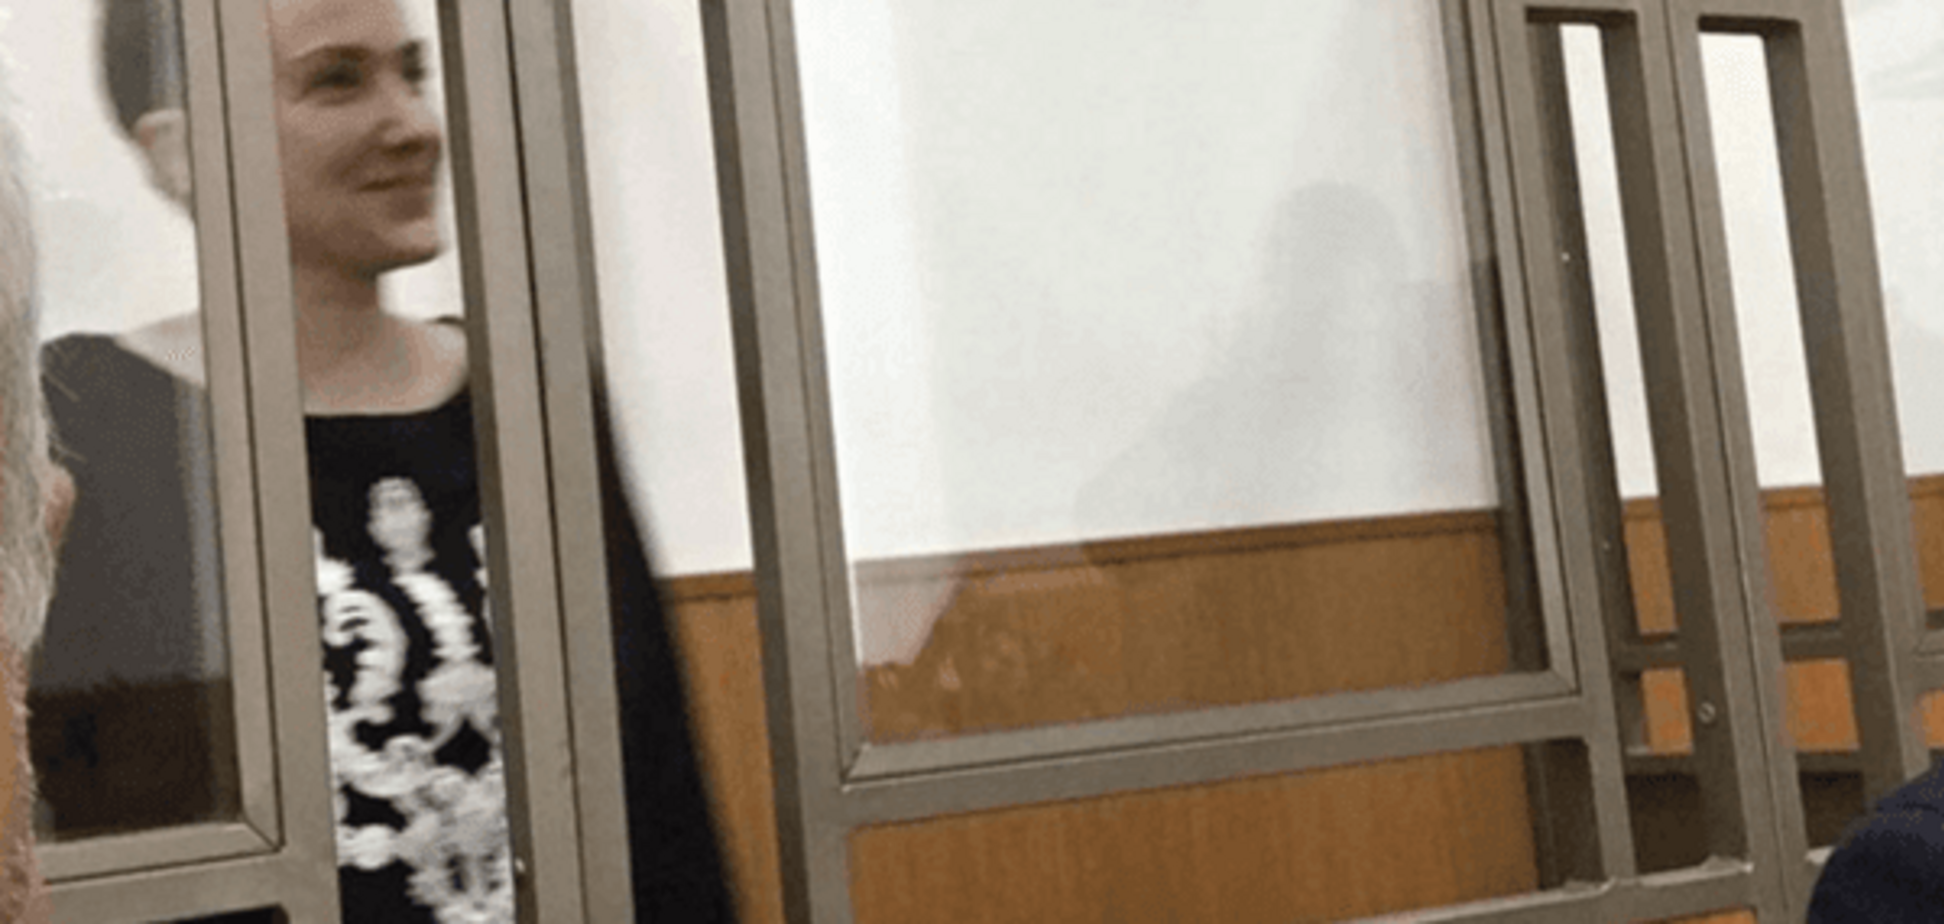 Судилище над Савченко наблизилося до фіналу - Новіков 